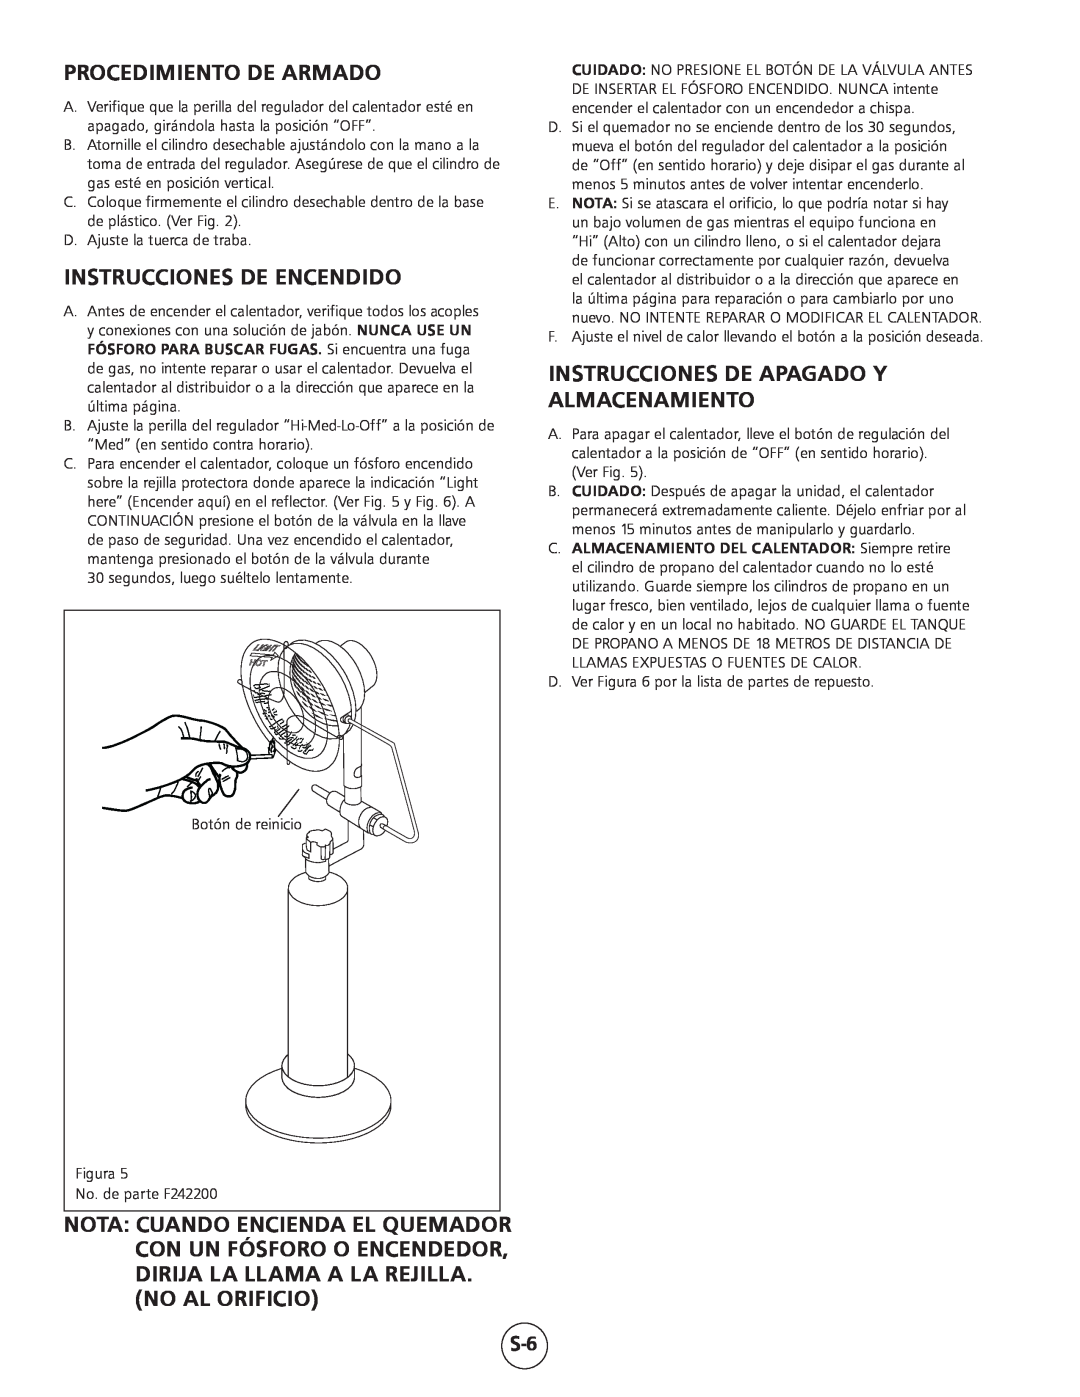 Mr. Heater MH15 operating instructions Procedimiento De Armado, Instrucciones De Encendido, No Al Orificio 